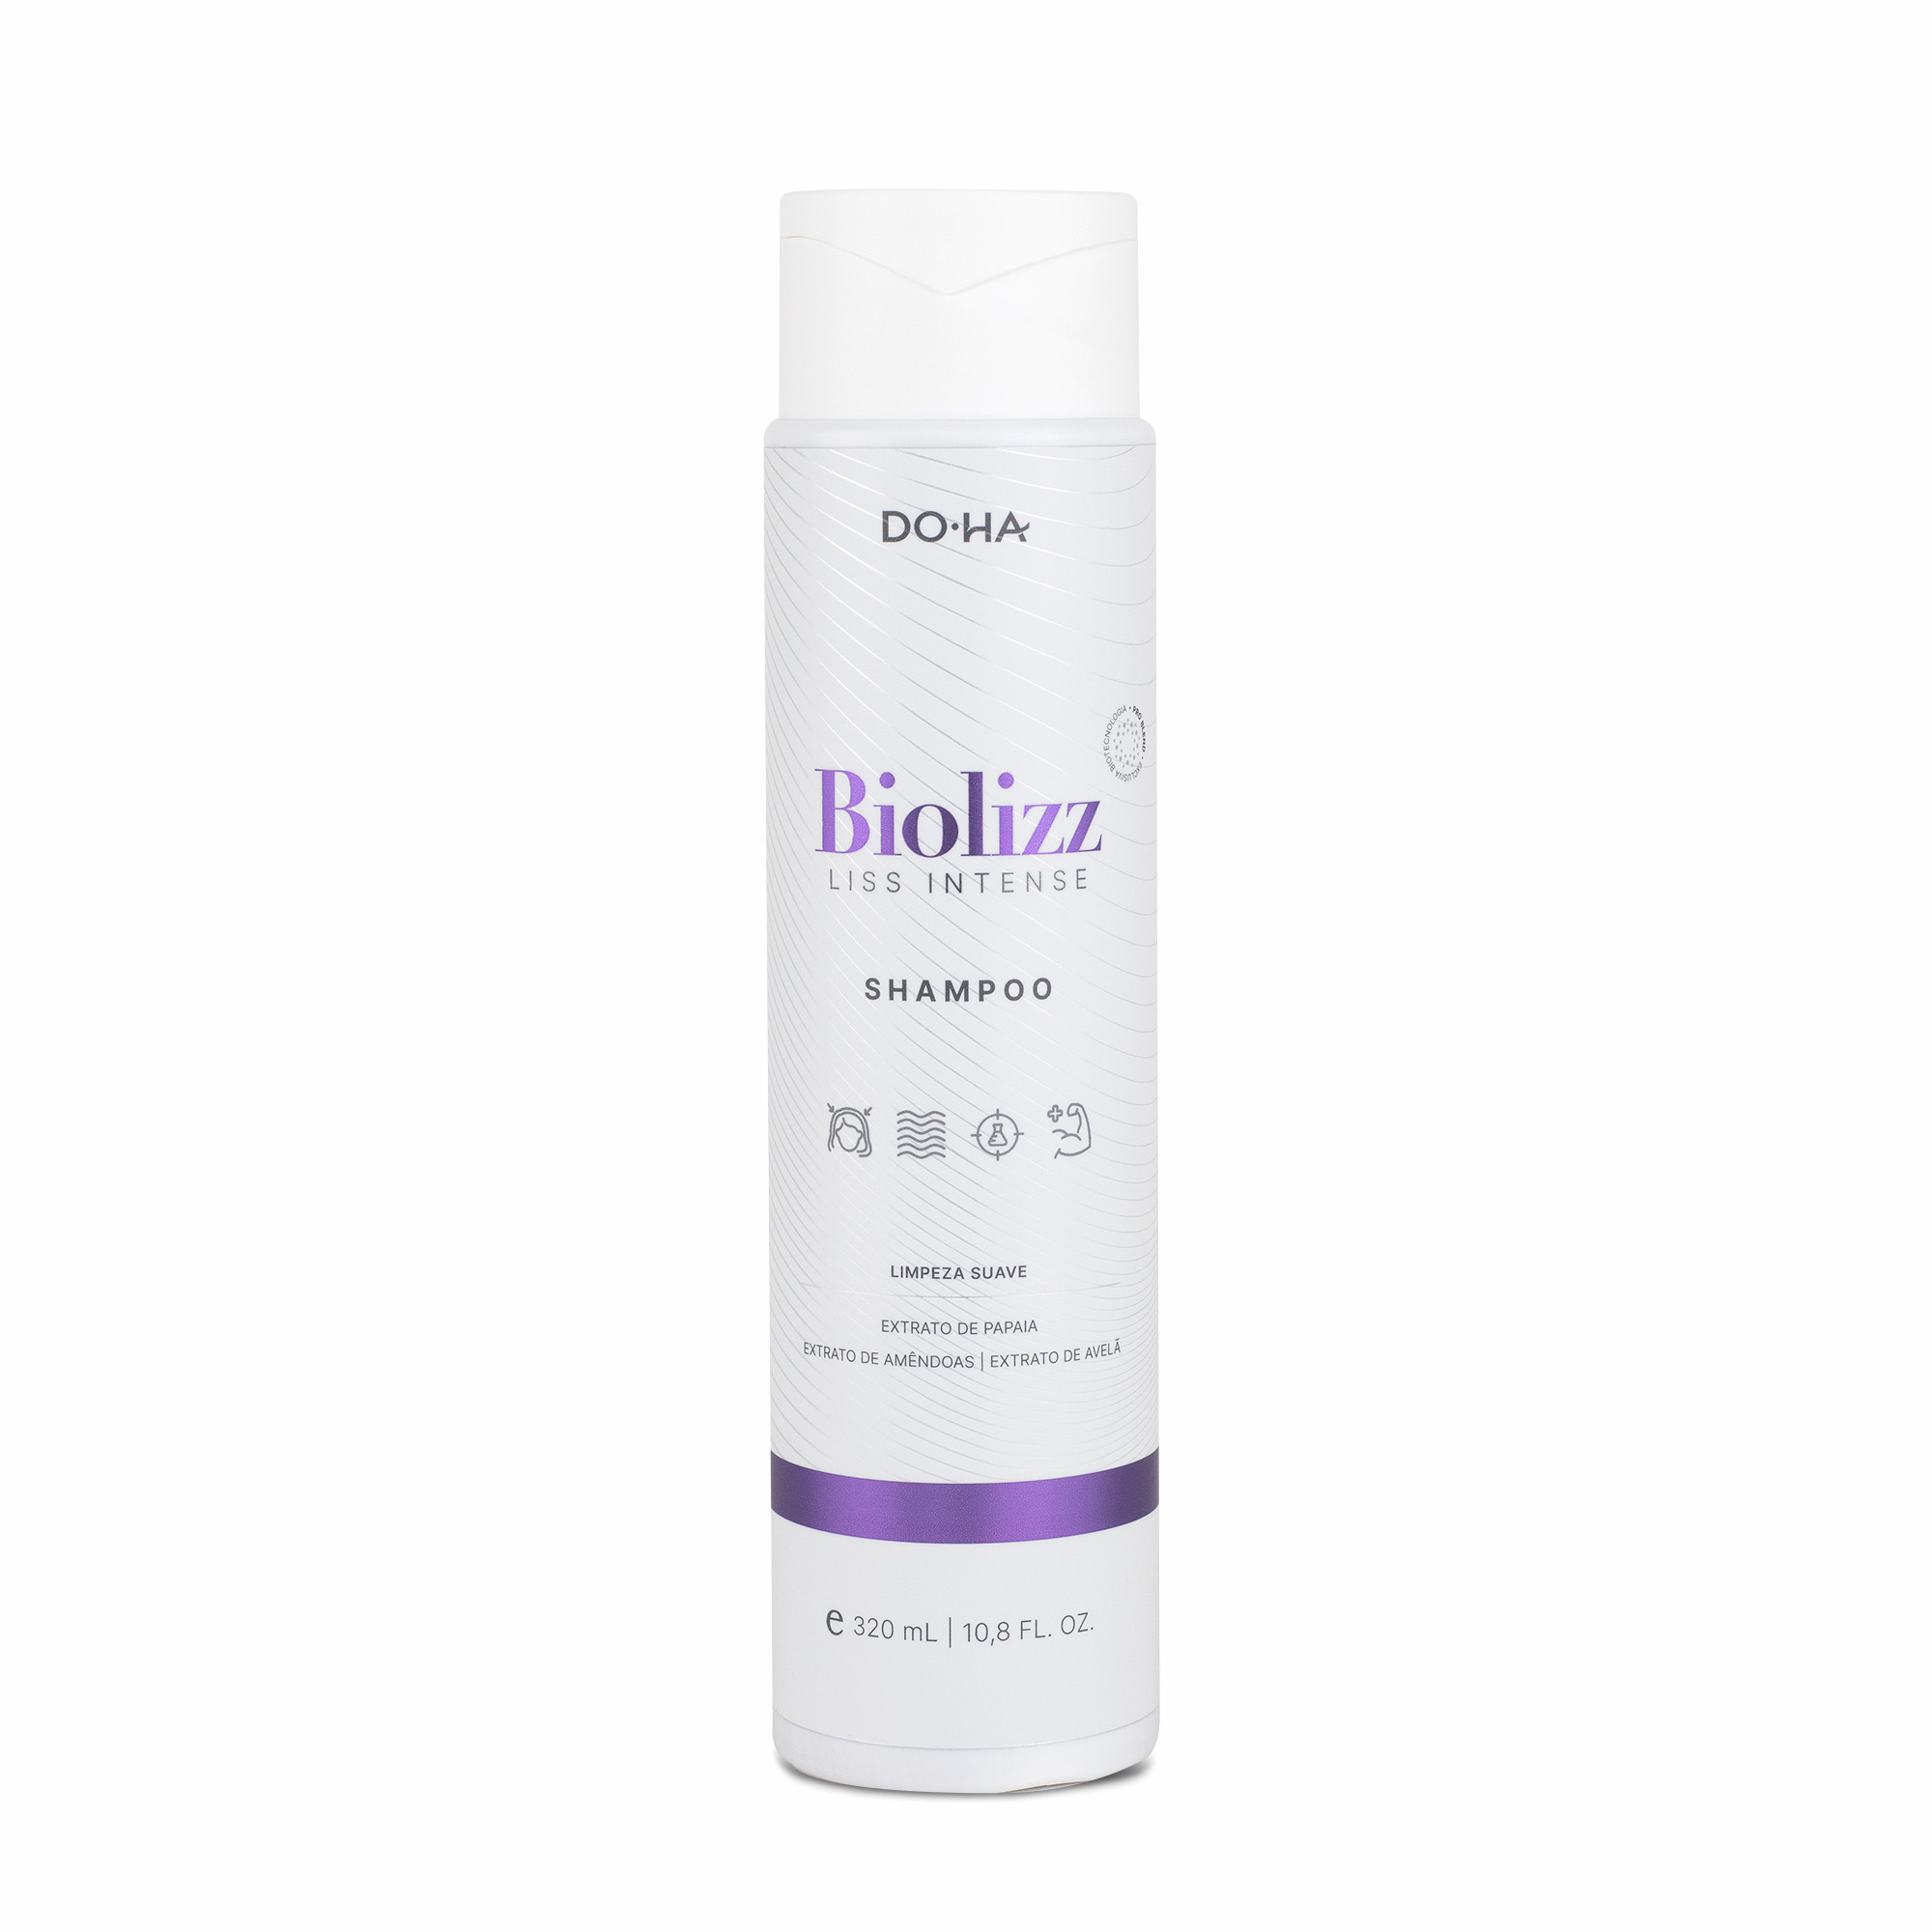 Biolizz Liss Intense - Shampoo - 320ml